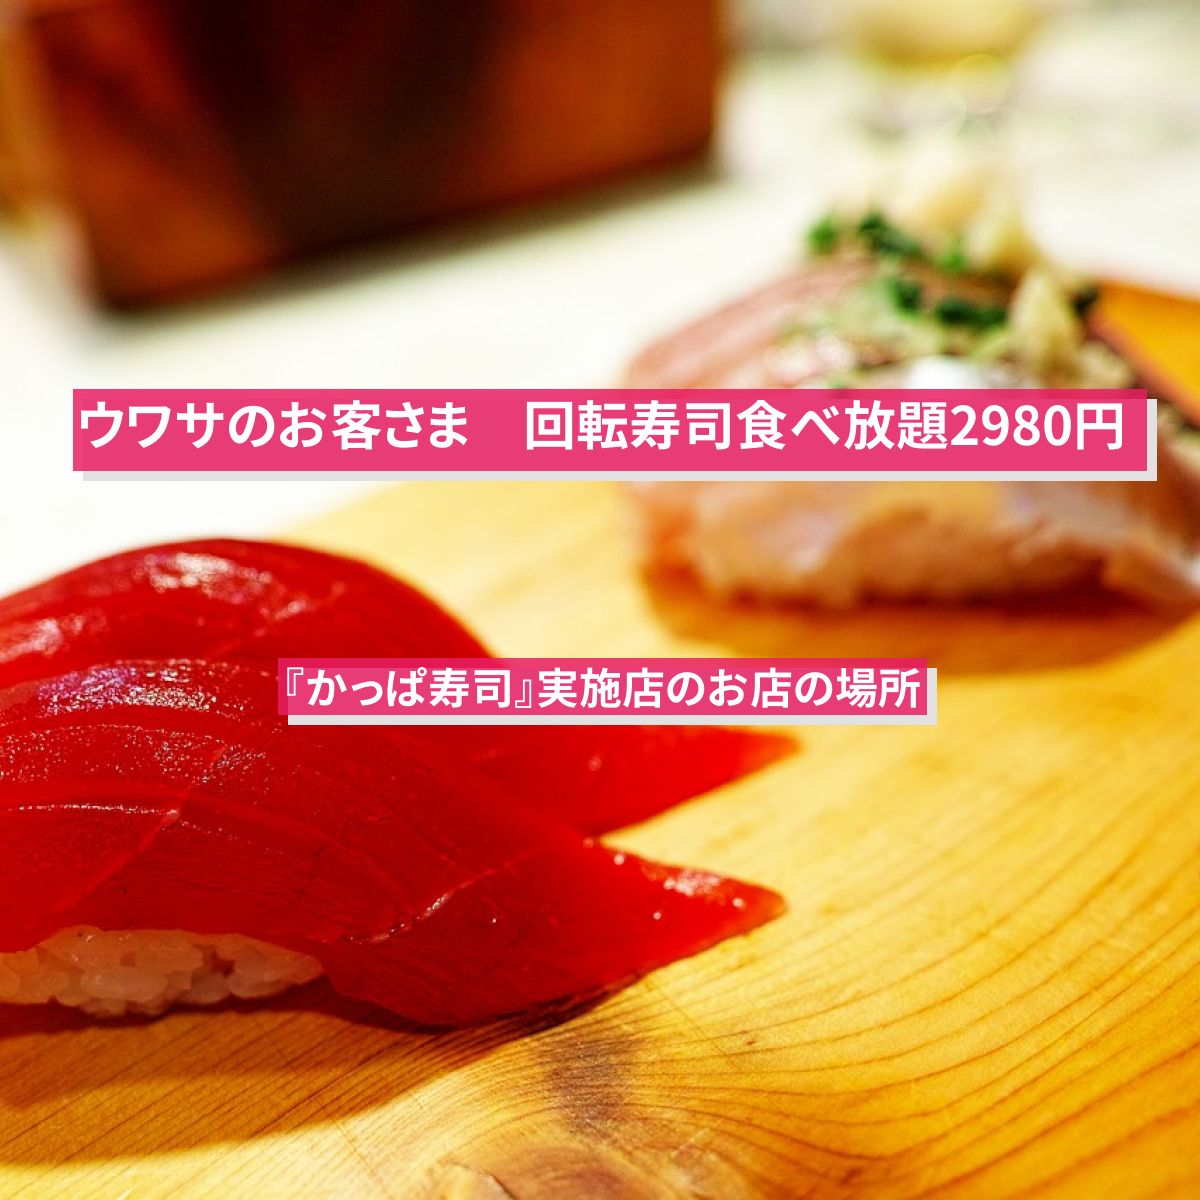 【ウワサのお客さま】回転寿司食べ放題2980円『かっぱ寿司』実施店のお店の場所